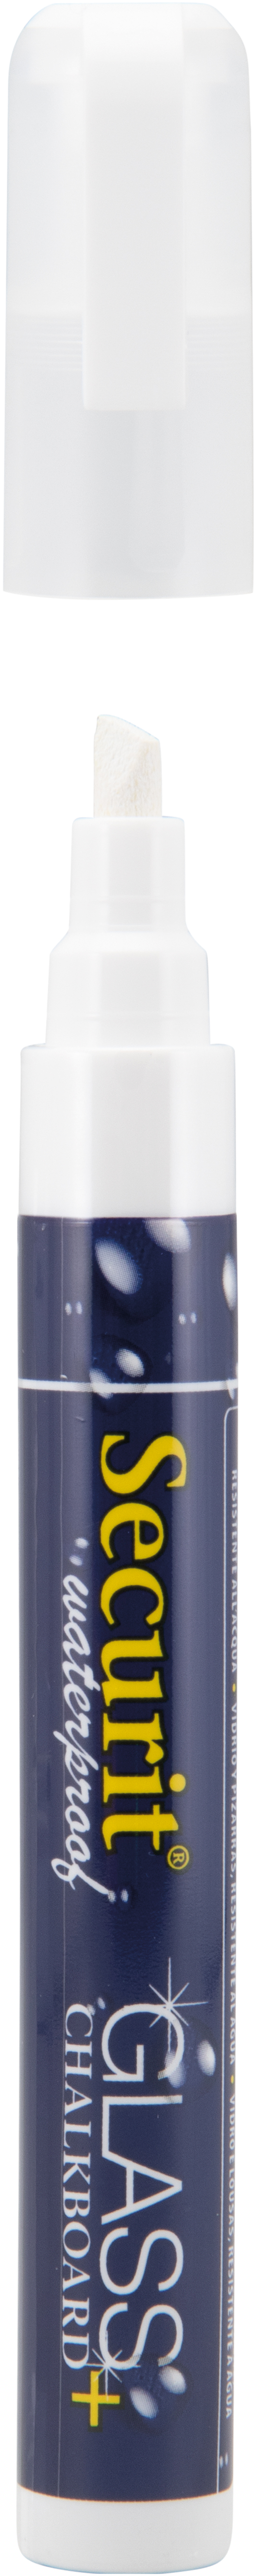 SECURIT Marker Craie 2-6mm SMA610-WT blanc, imperméable